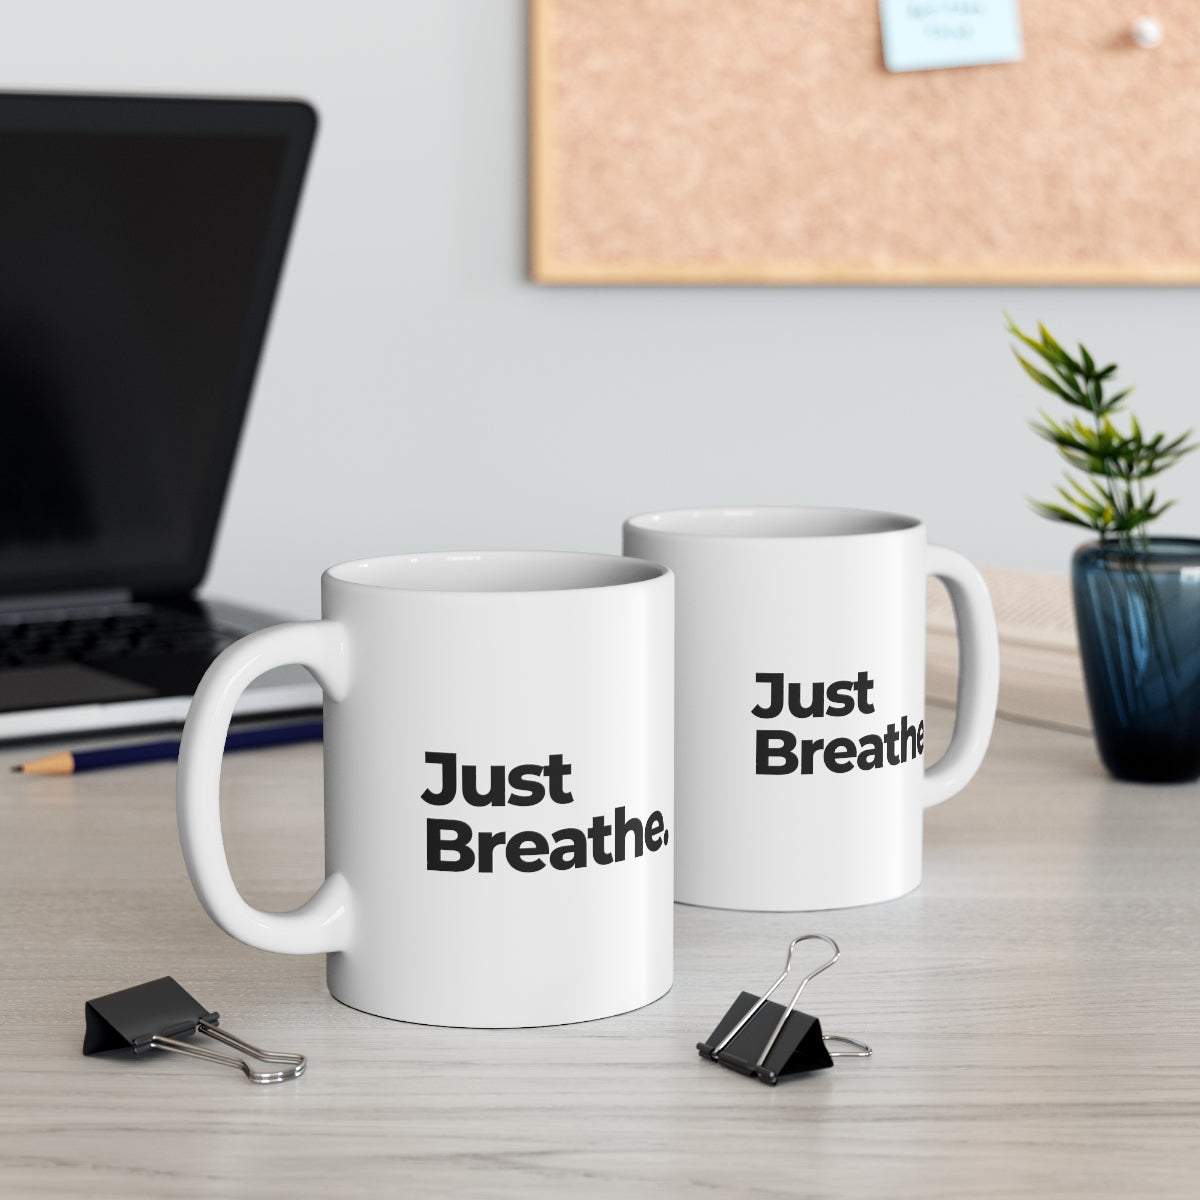 Just Breathe Mug Double Sided White Ceramic Coffee Tea Mug- Inspirational Birthday Gift, Motivational Mug, Daily Affirmation Mug, Self Care Gift